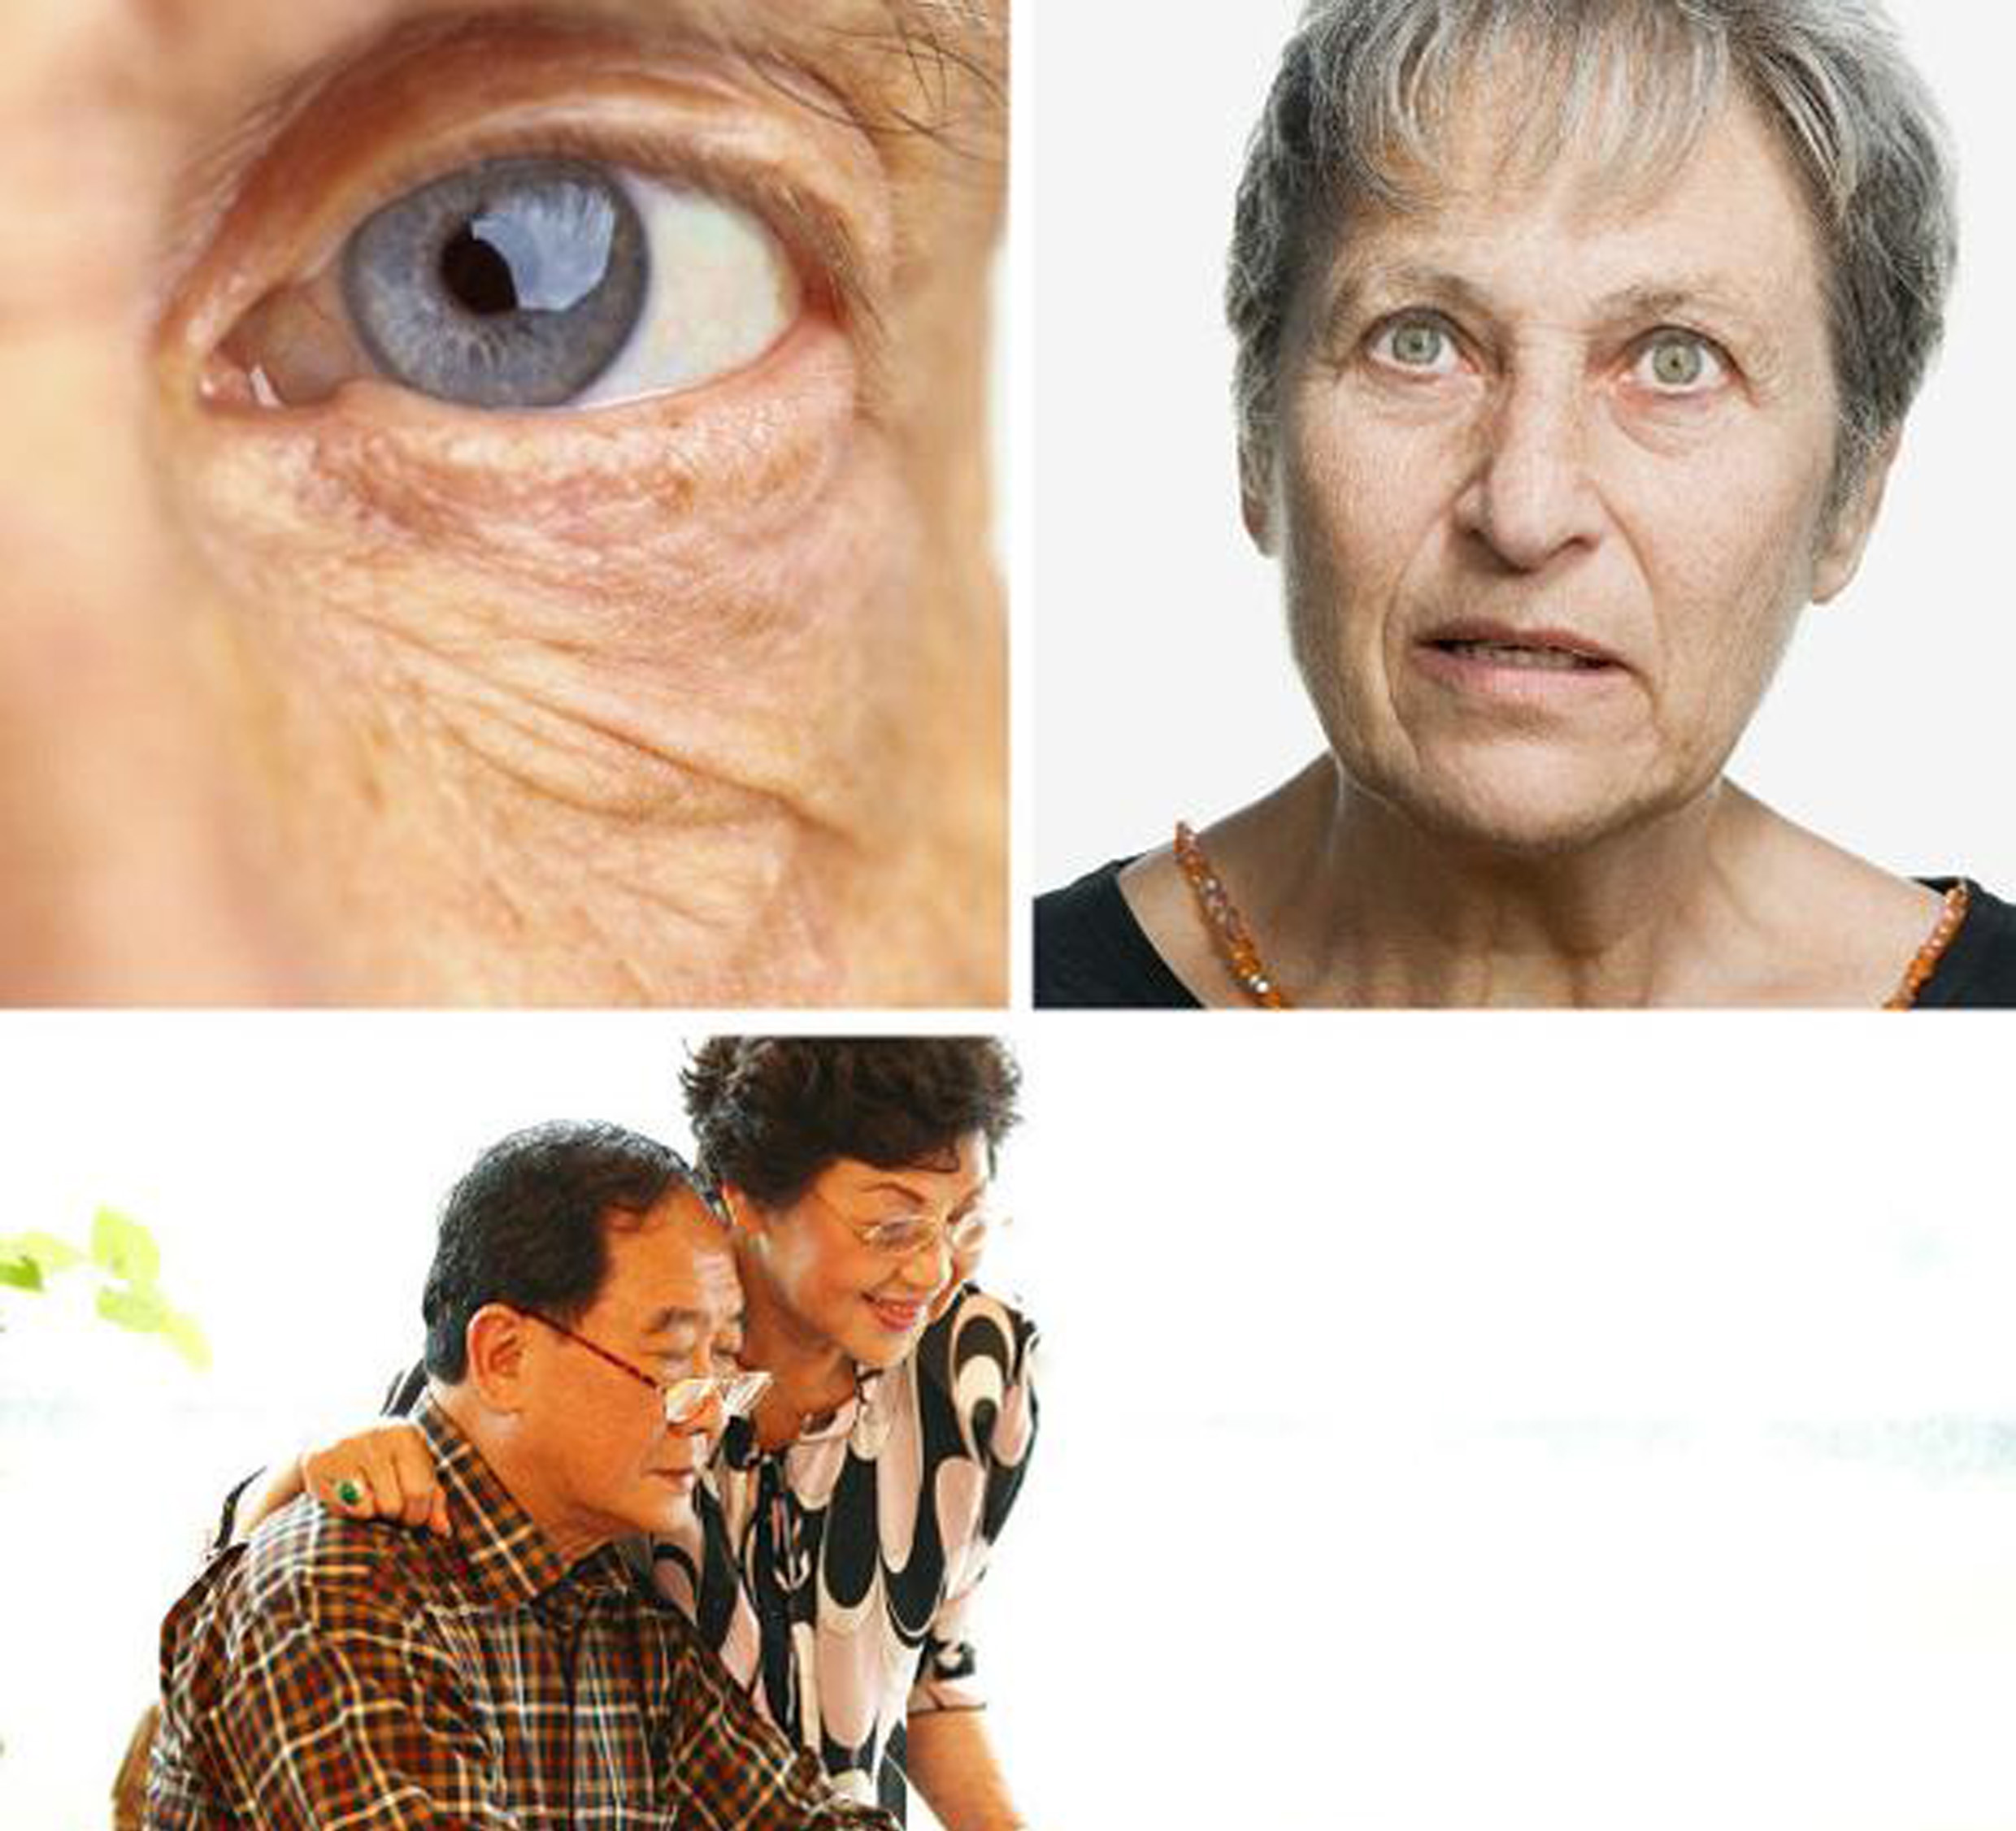 季節交替需防青光眼 眼睛刺痛應及時就醫